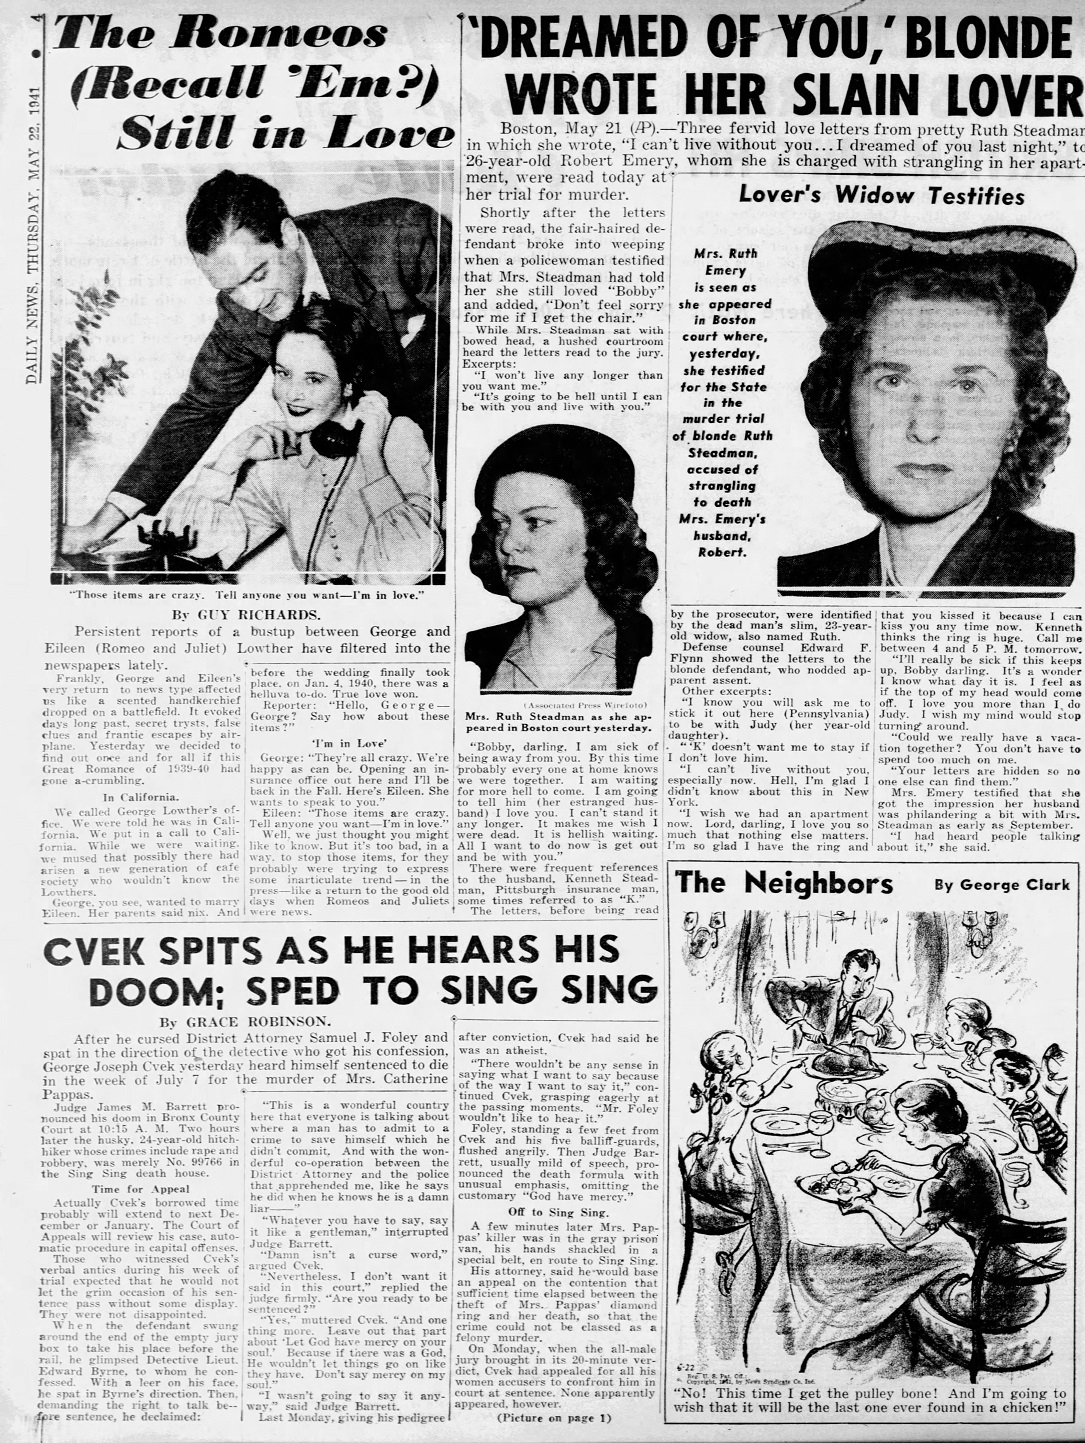 Daily_News_Thu__May_22__1941_.jpg